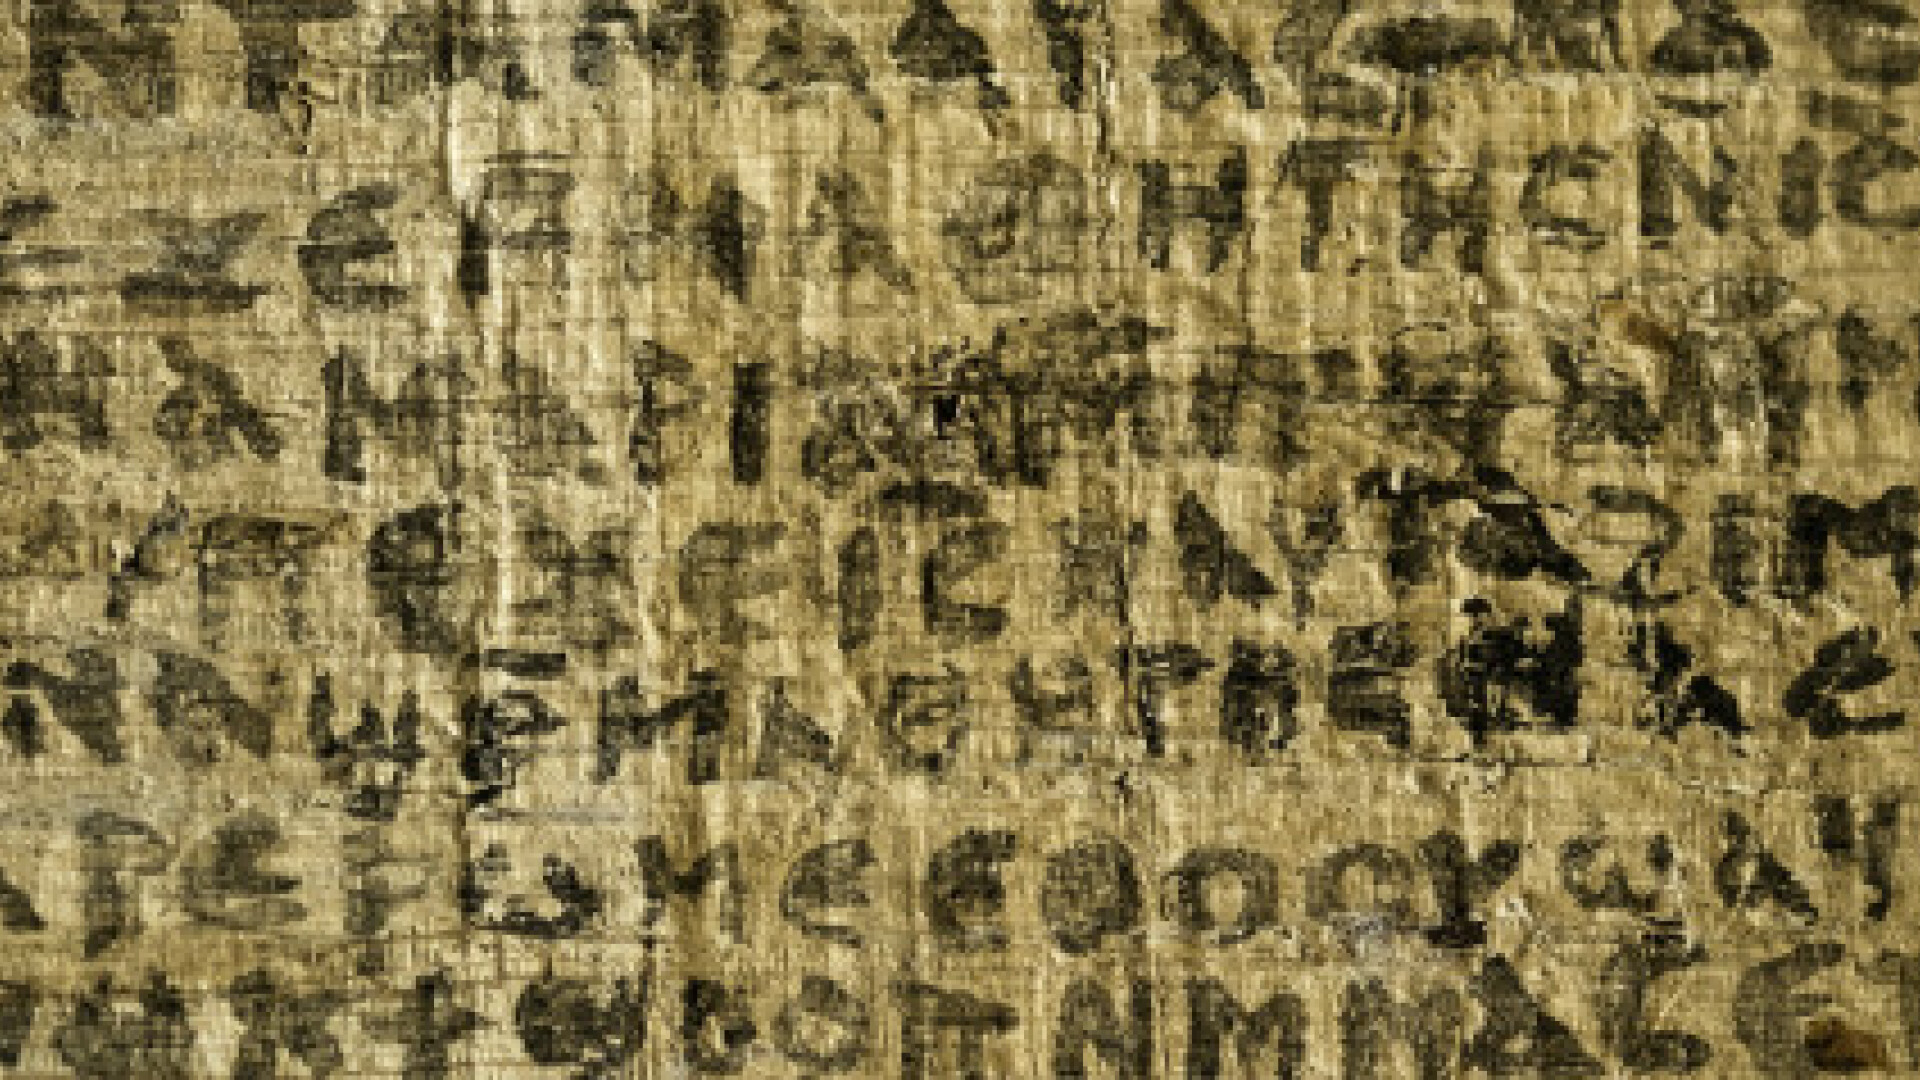 manuscris in limba copta